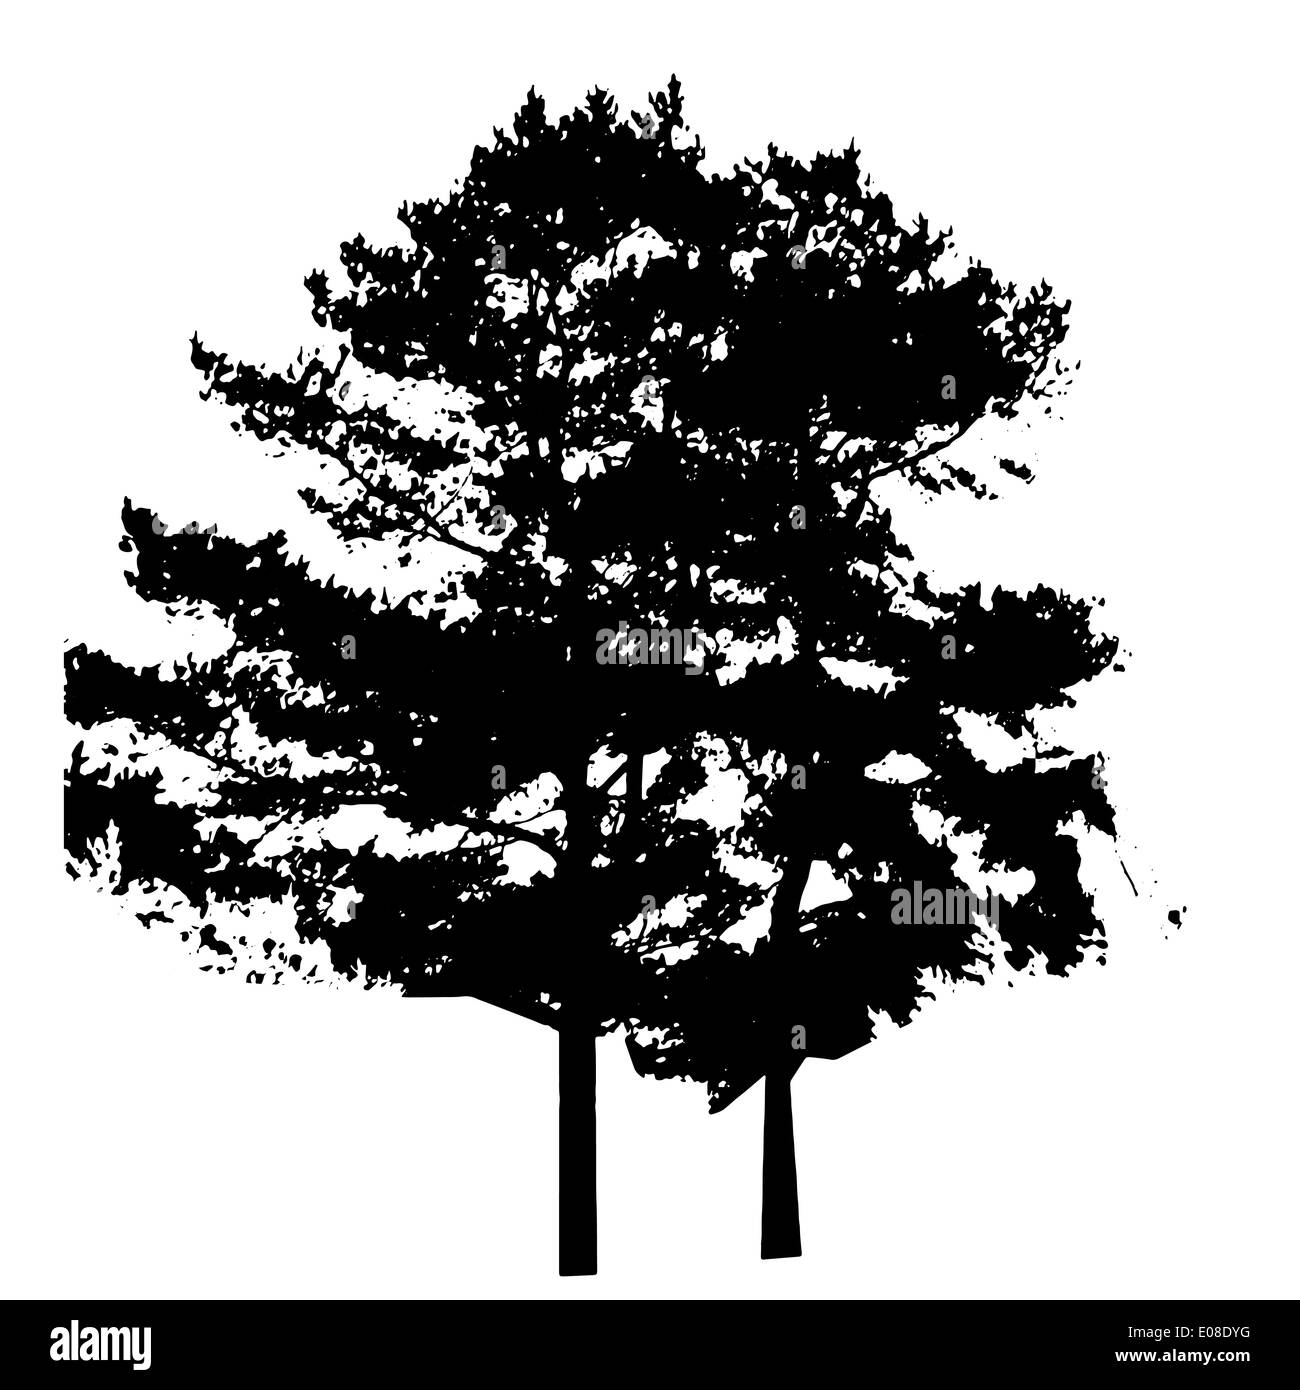 Baum-Silhouette isoliert auf weißem Migrationshintergrund. Vecrtor Illustration Stockfoto